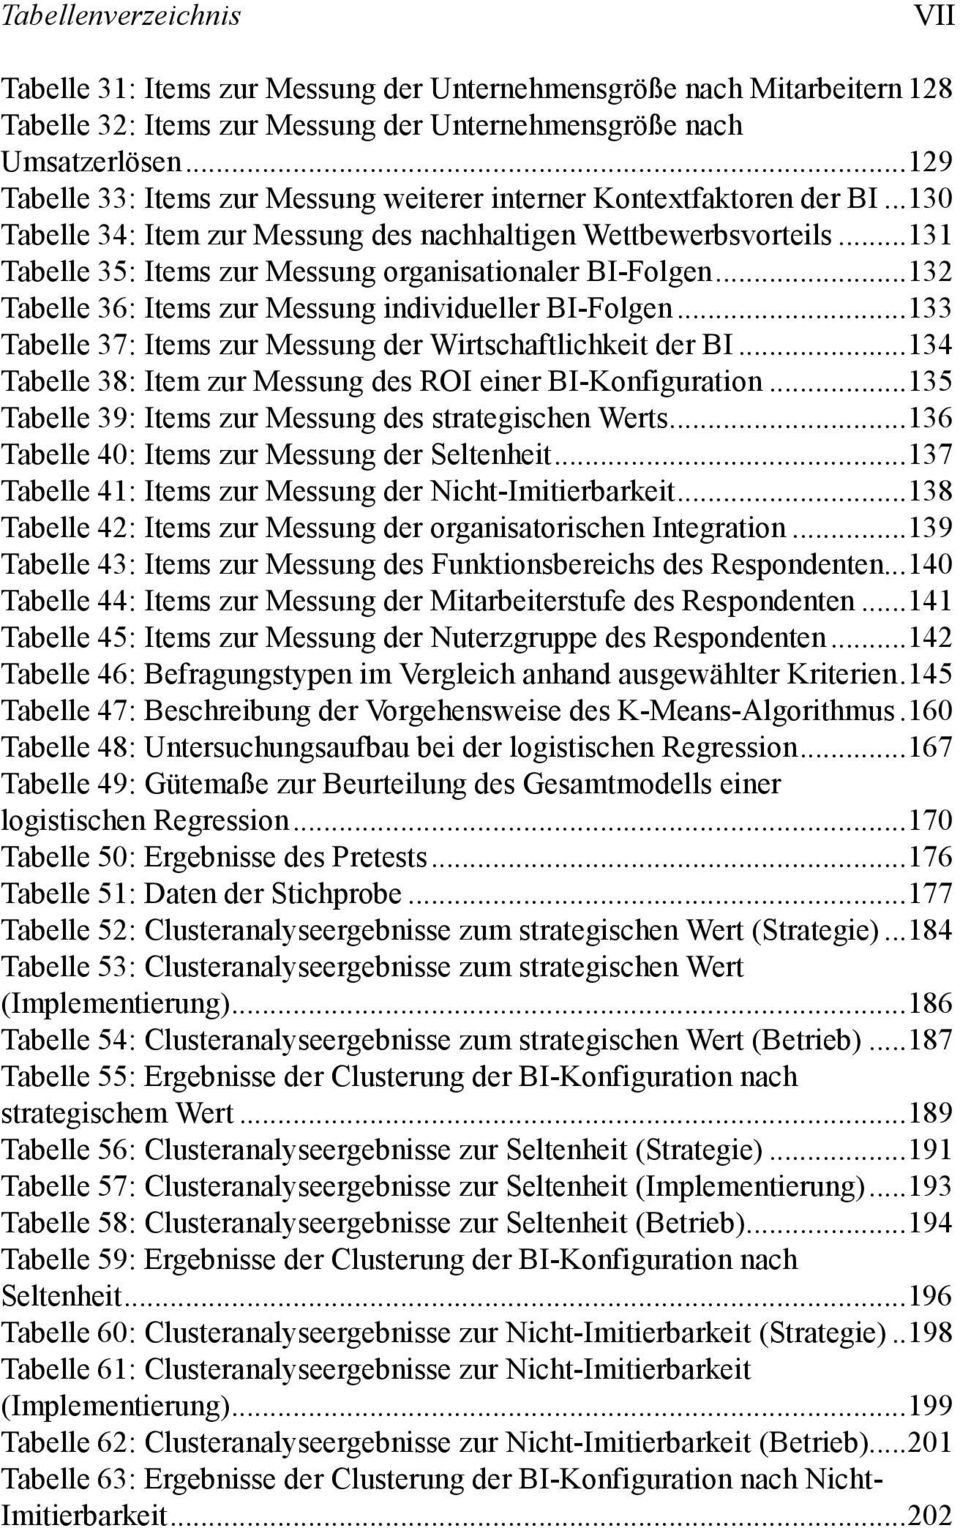 ..131 Tabelle 35: Items zur Messung organisationaler BI-Folgen...132 Tabelle 36: Items zur Messung individueller BI-Folgen...133 Tabelle 37: Items zur Messung der Wirtschaftlichkeit der BI.